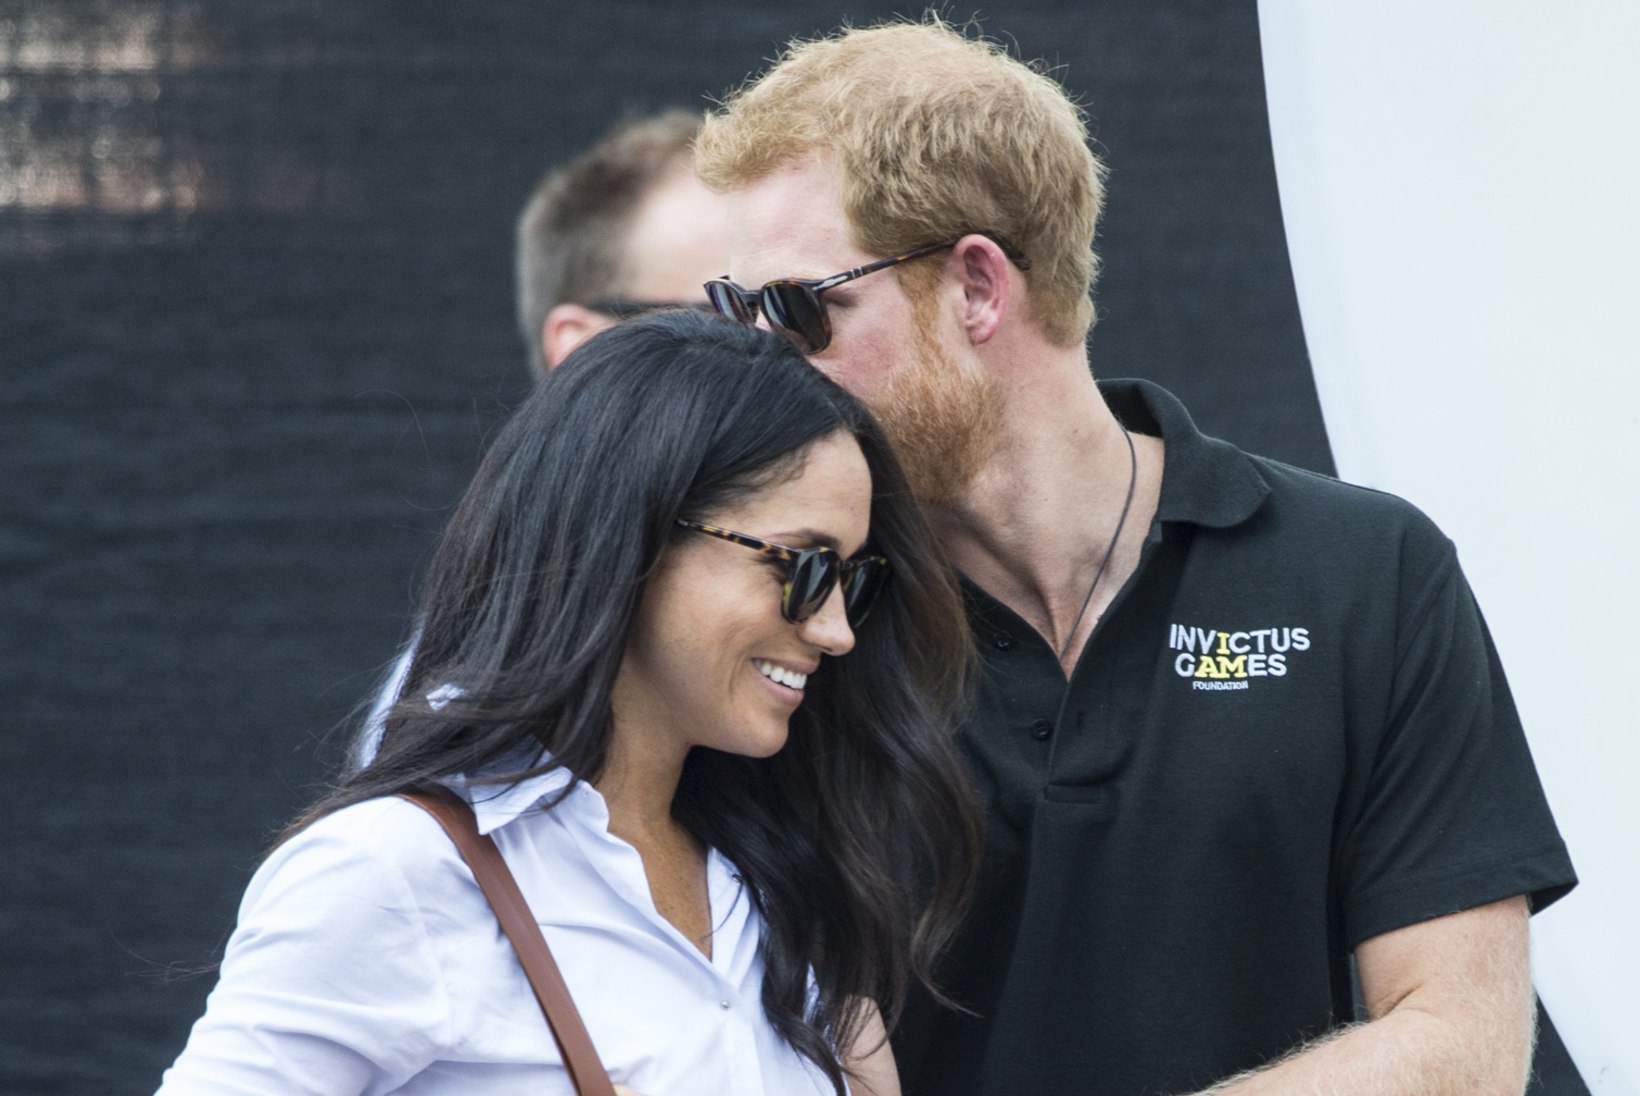 FOTOD | Prints Harry ja tema pruut kudrutasid kuninglikku etiketti eirates käsikäes